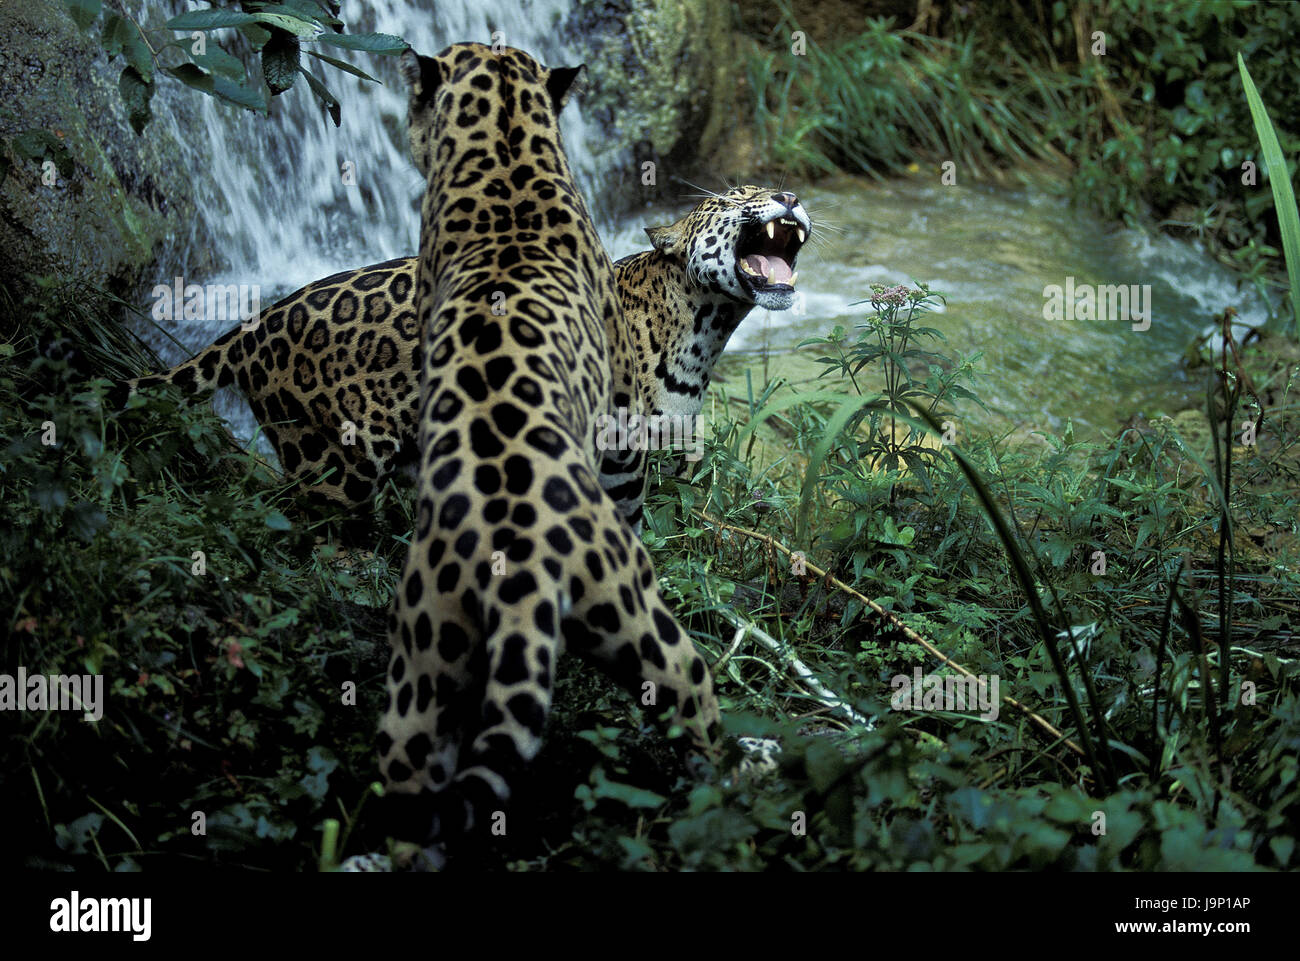 Jaguar,Panthera onca,fight, Stock Photo